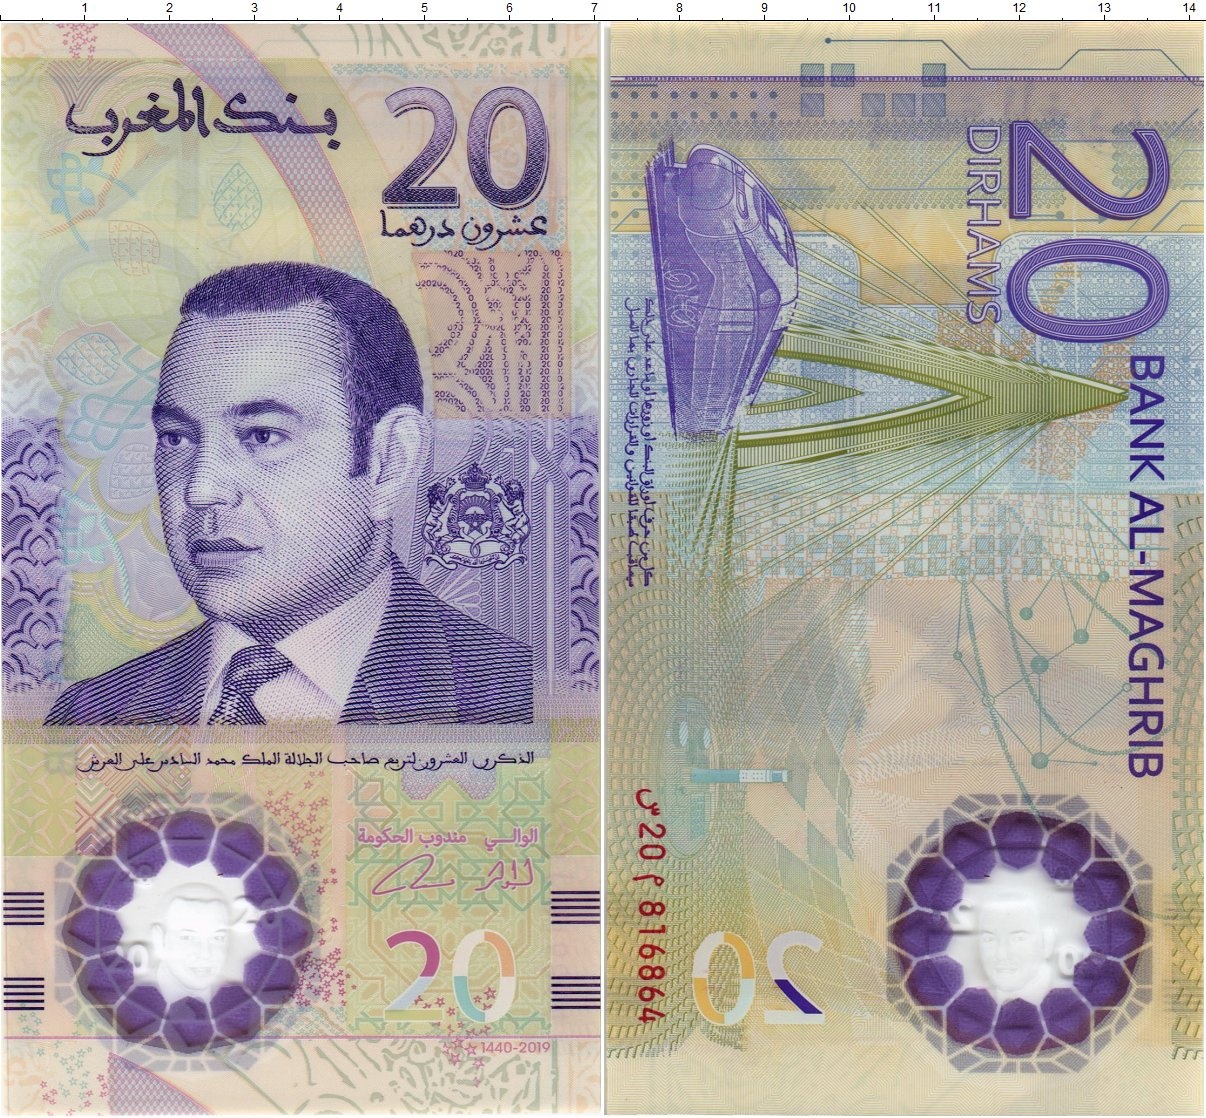 20 Дирхамов Марокко банкнота